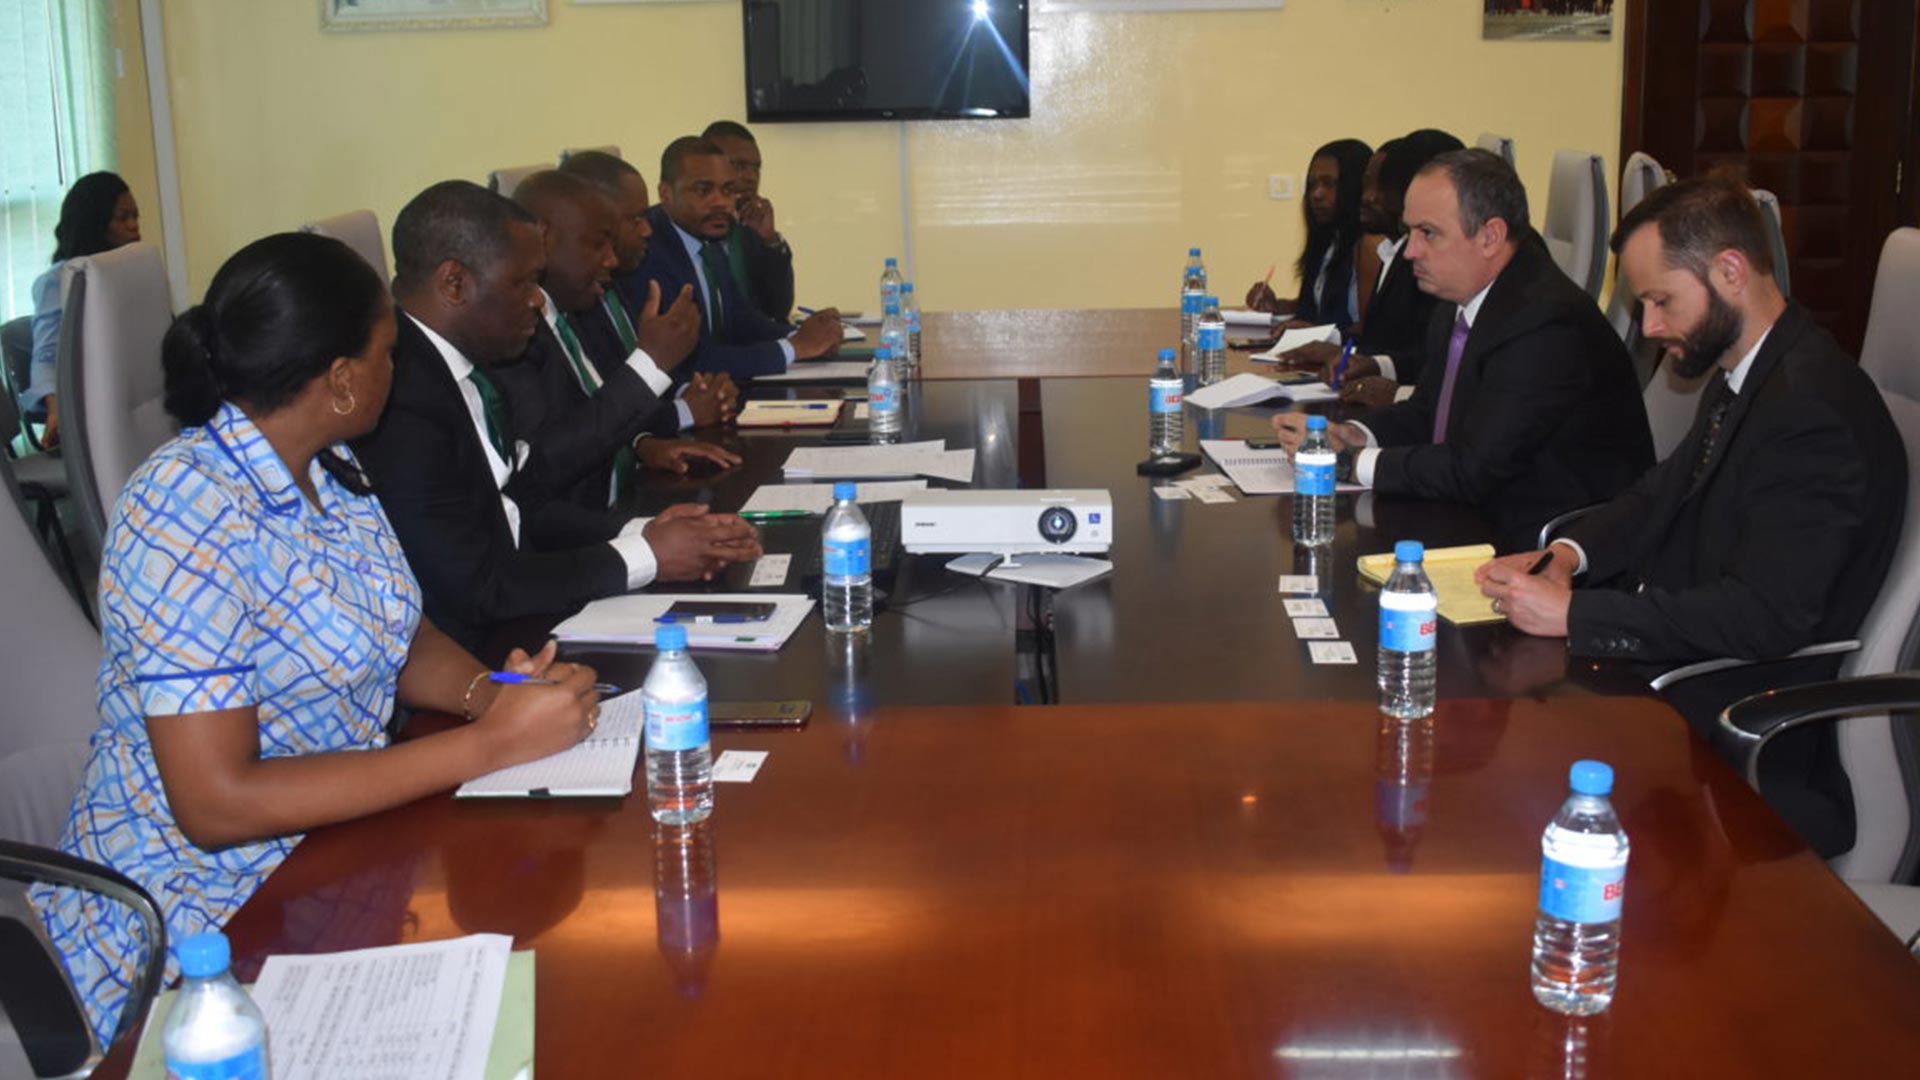 Reunión de BANGE con funcionarios del FMI en el marco de los trabajos del Programa Monitoreado por el Personal Técnico (PMP) para la República de Guinea Ecuatorial.